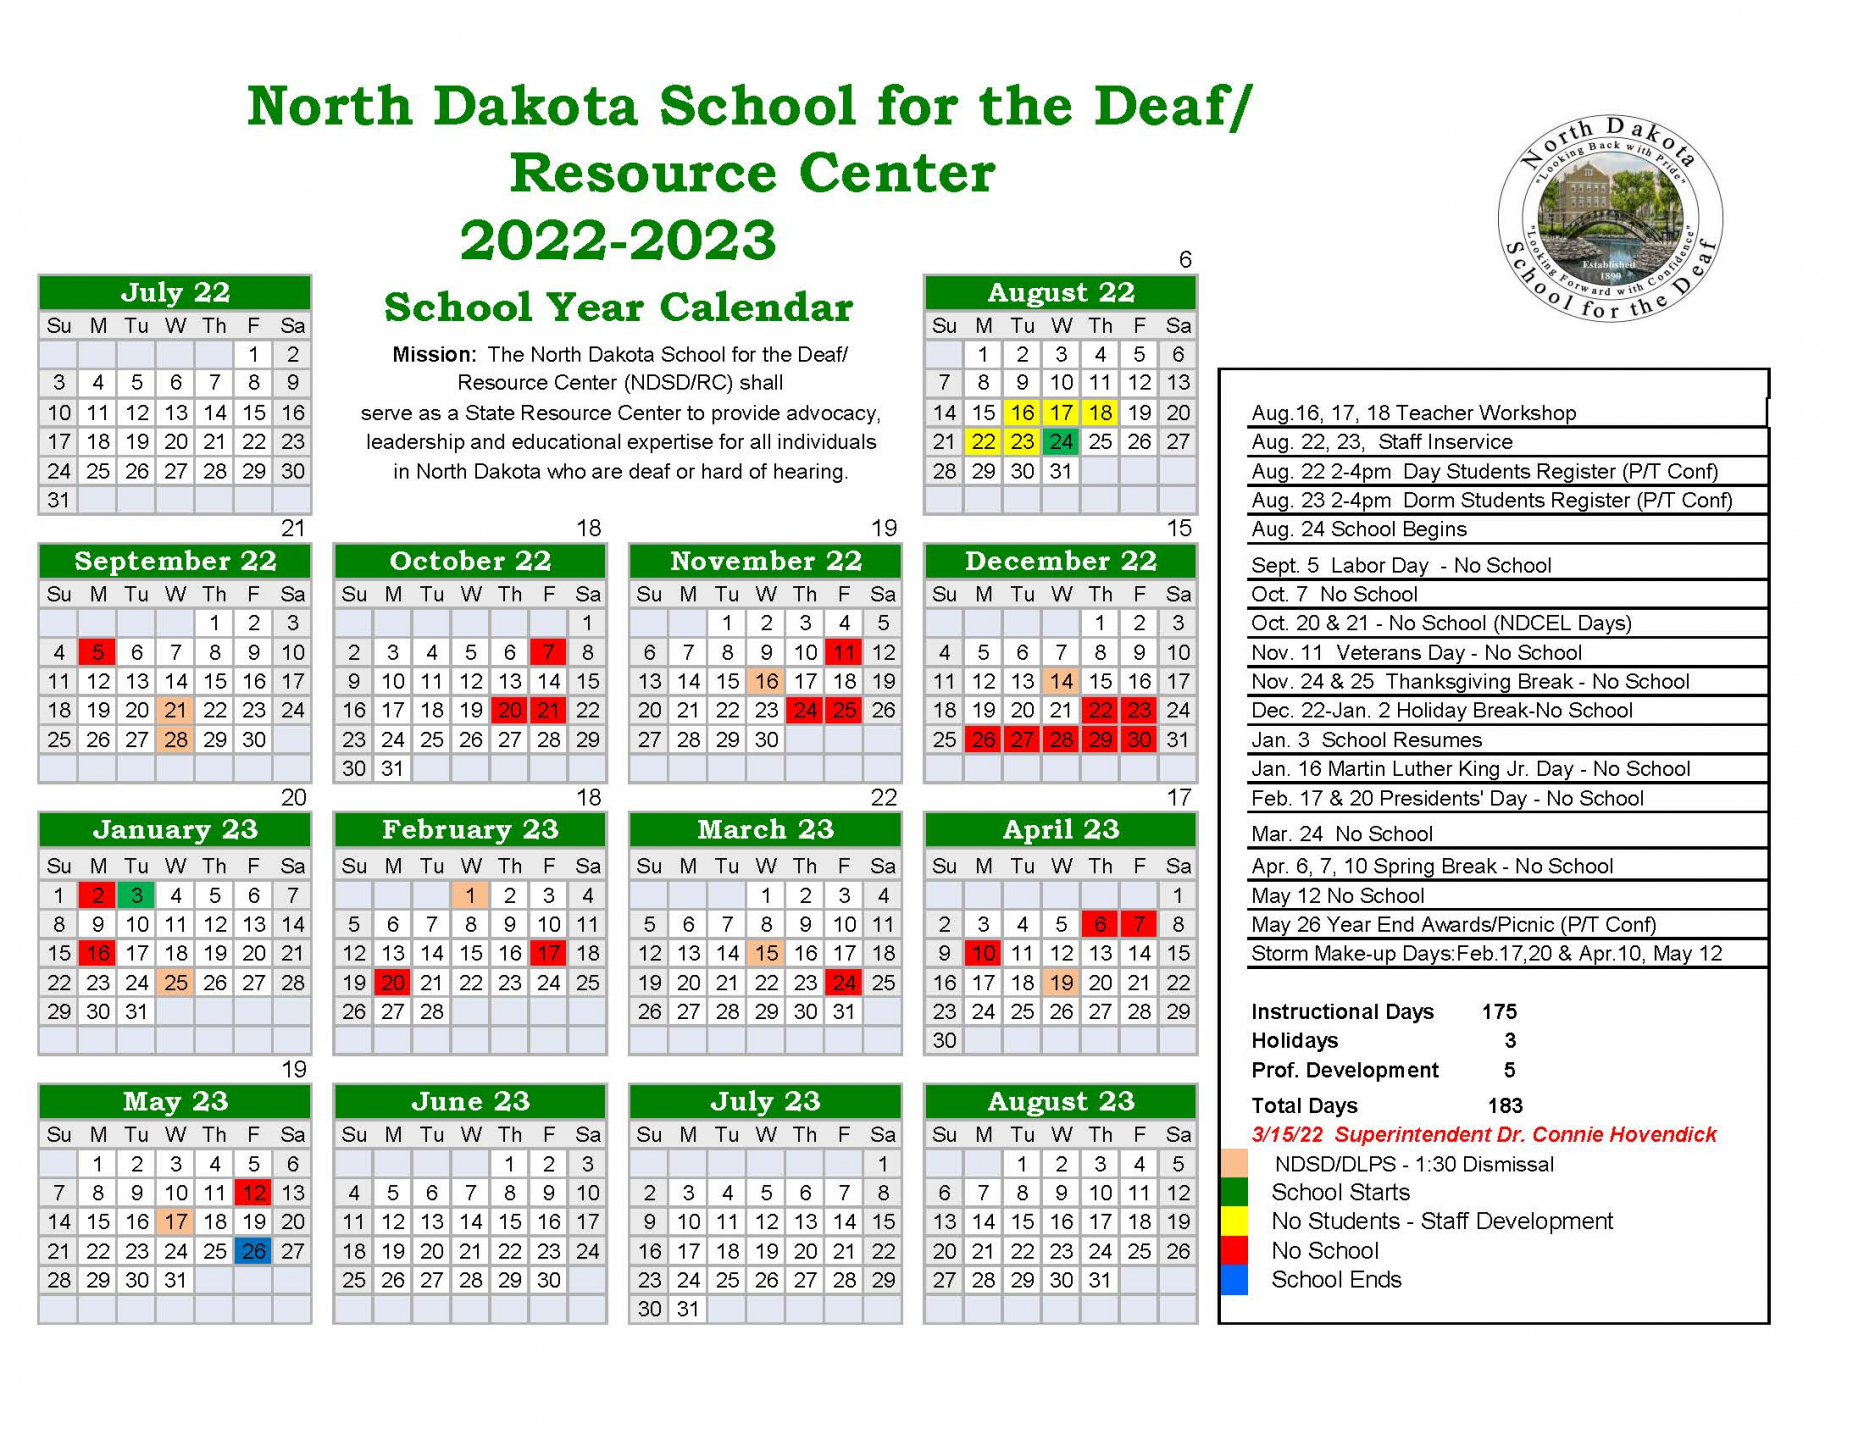 2022-2023 School Calendar with dates of no school etc.